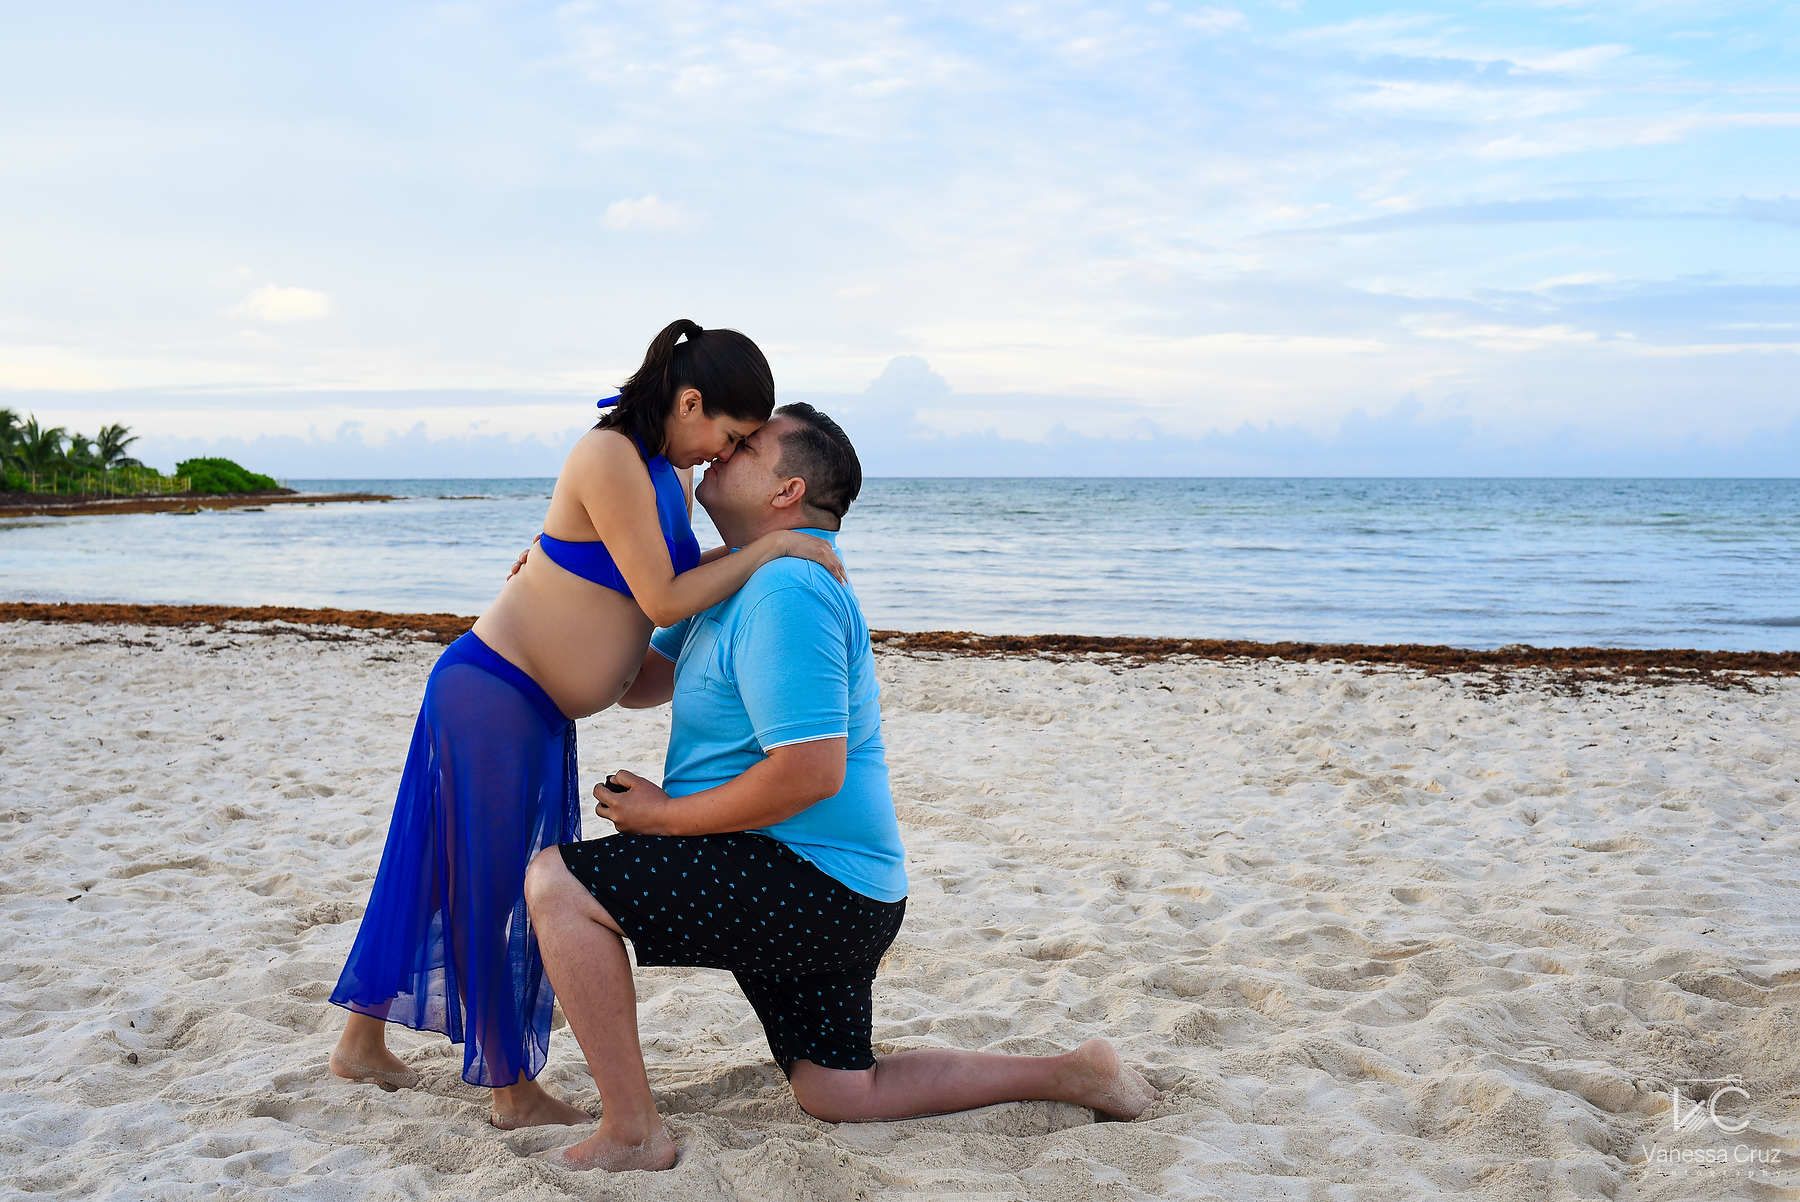 Beach Wedding Proposal ideas Playa del Carmen Mexico